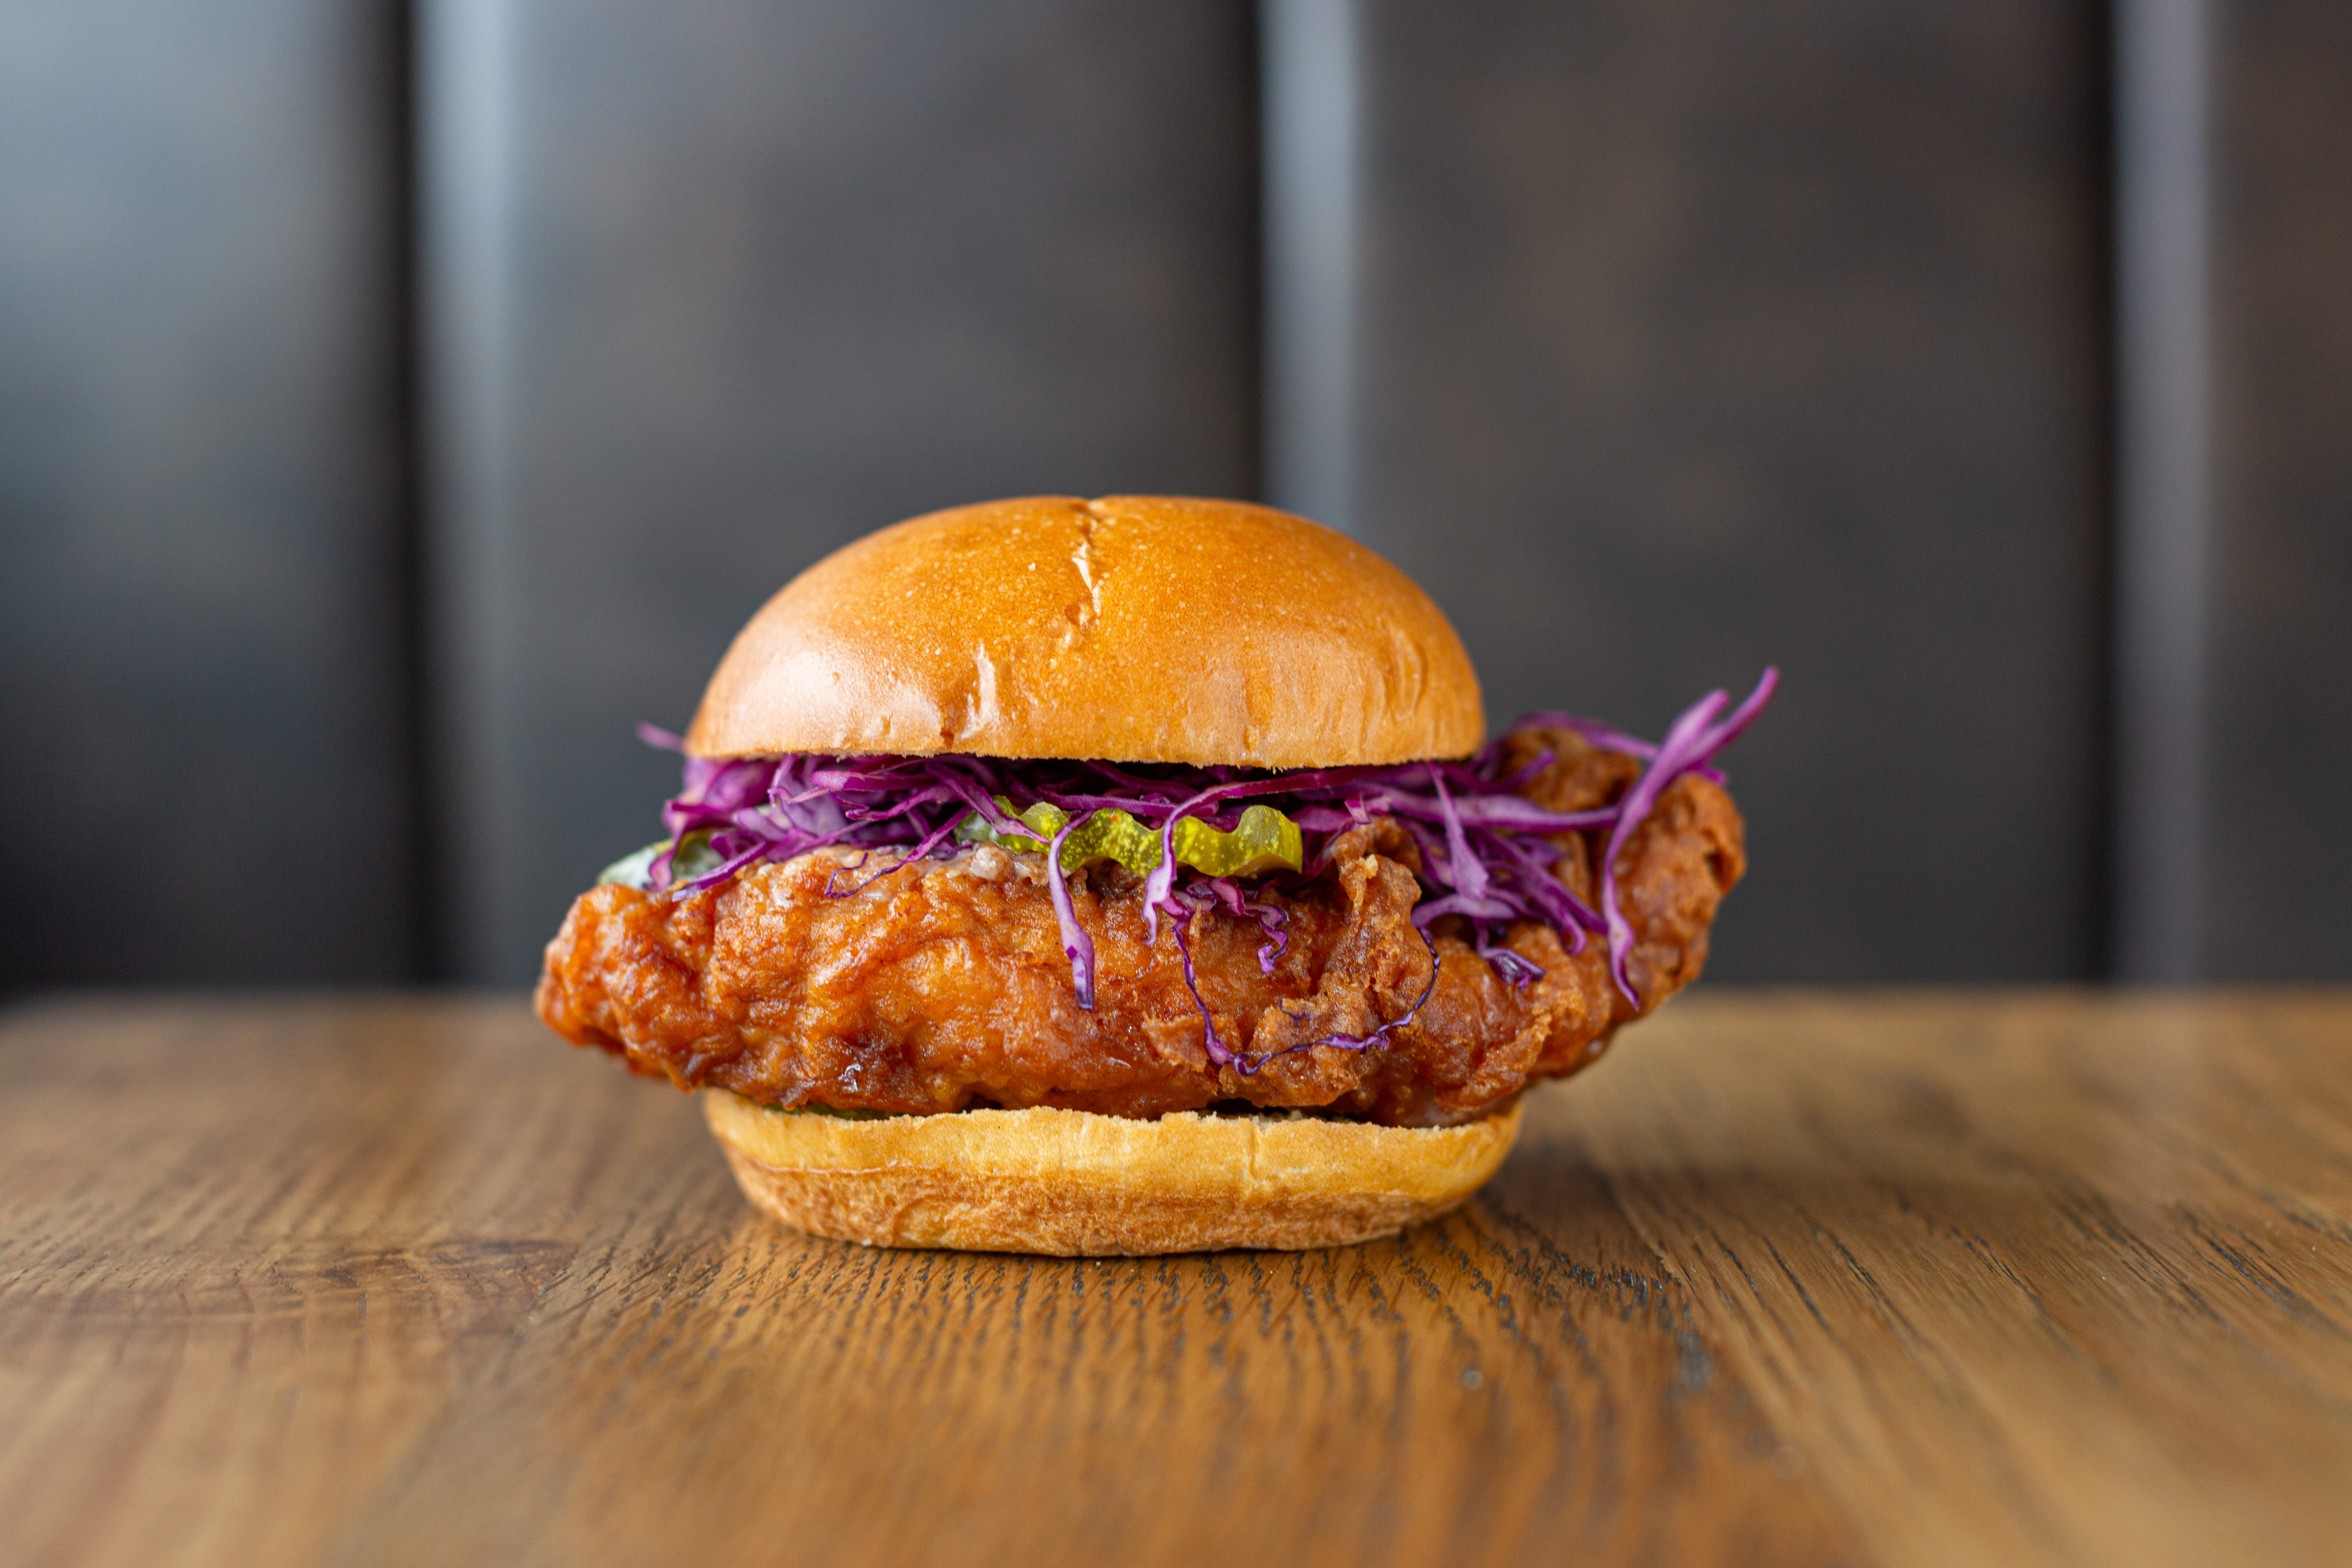 A fried chicken sandwich on brioche with purple cabbage.